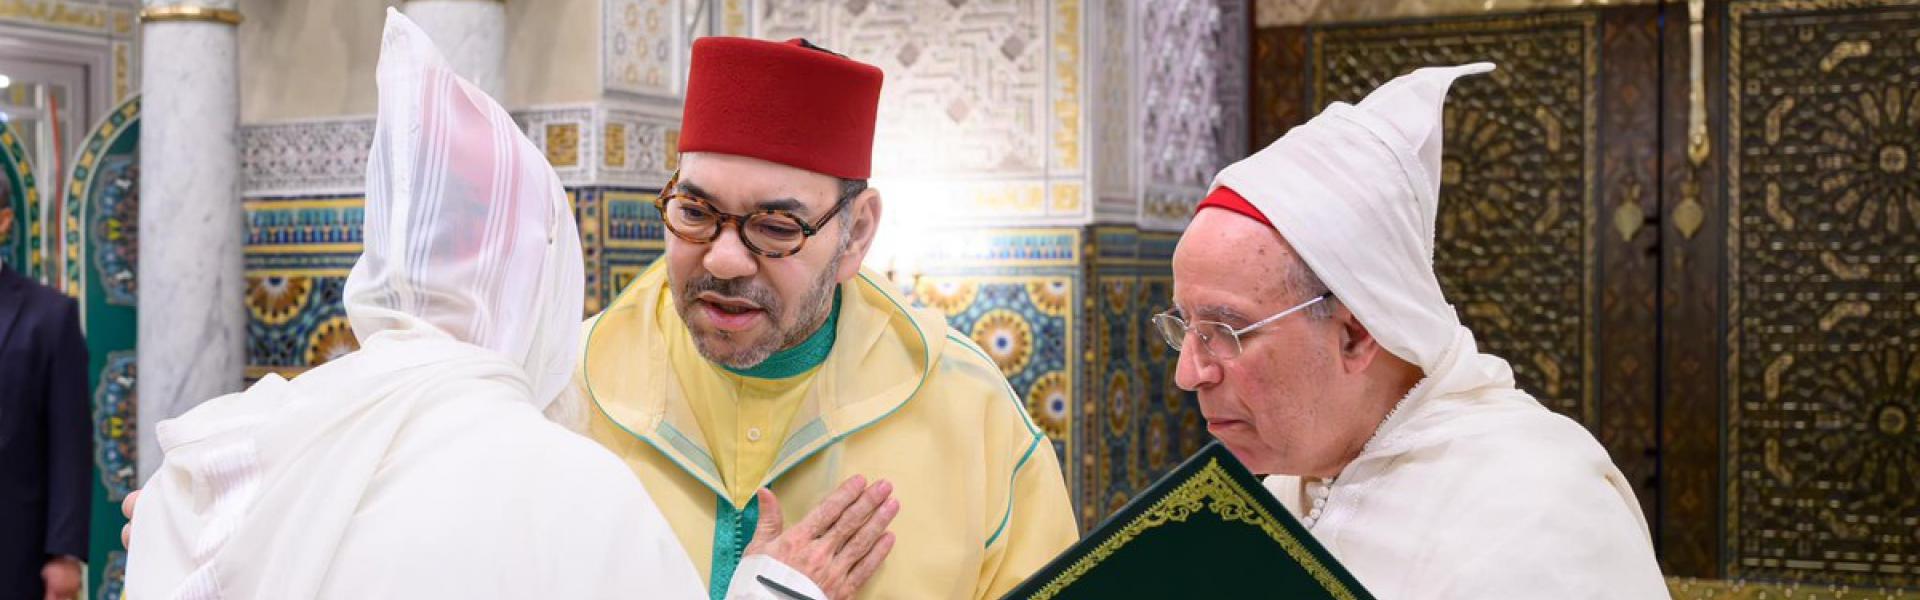 الملك محمد السادس يبدي حرصا على نشر قيم الاعتدال والوسطية في المغرب وأفريقيا 